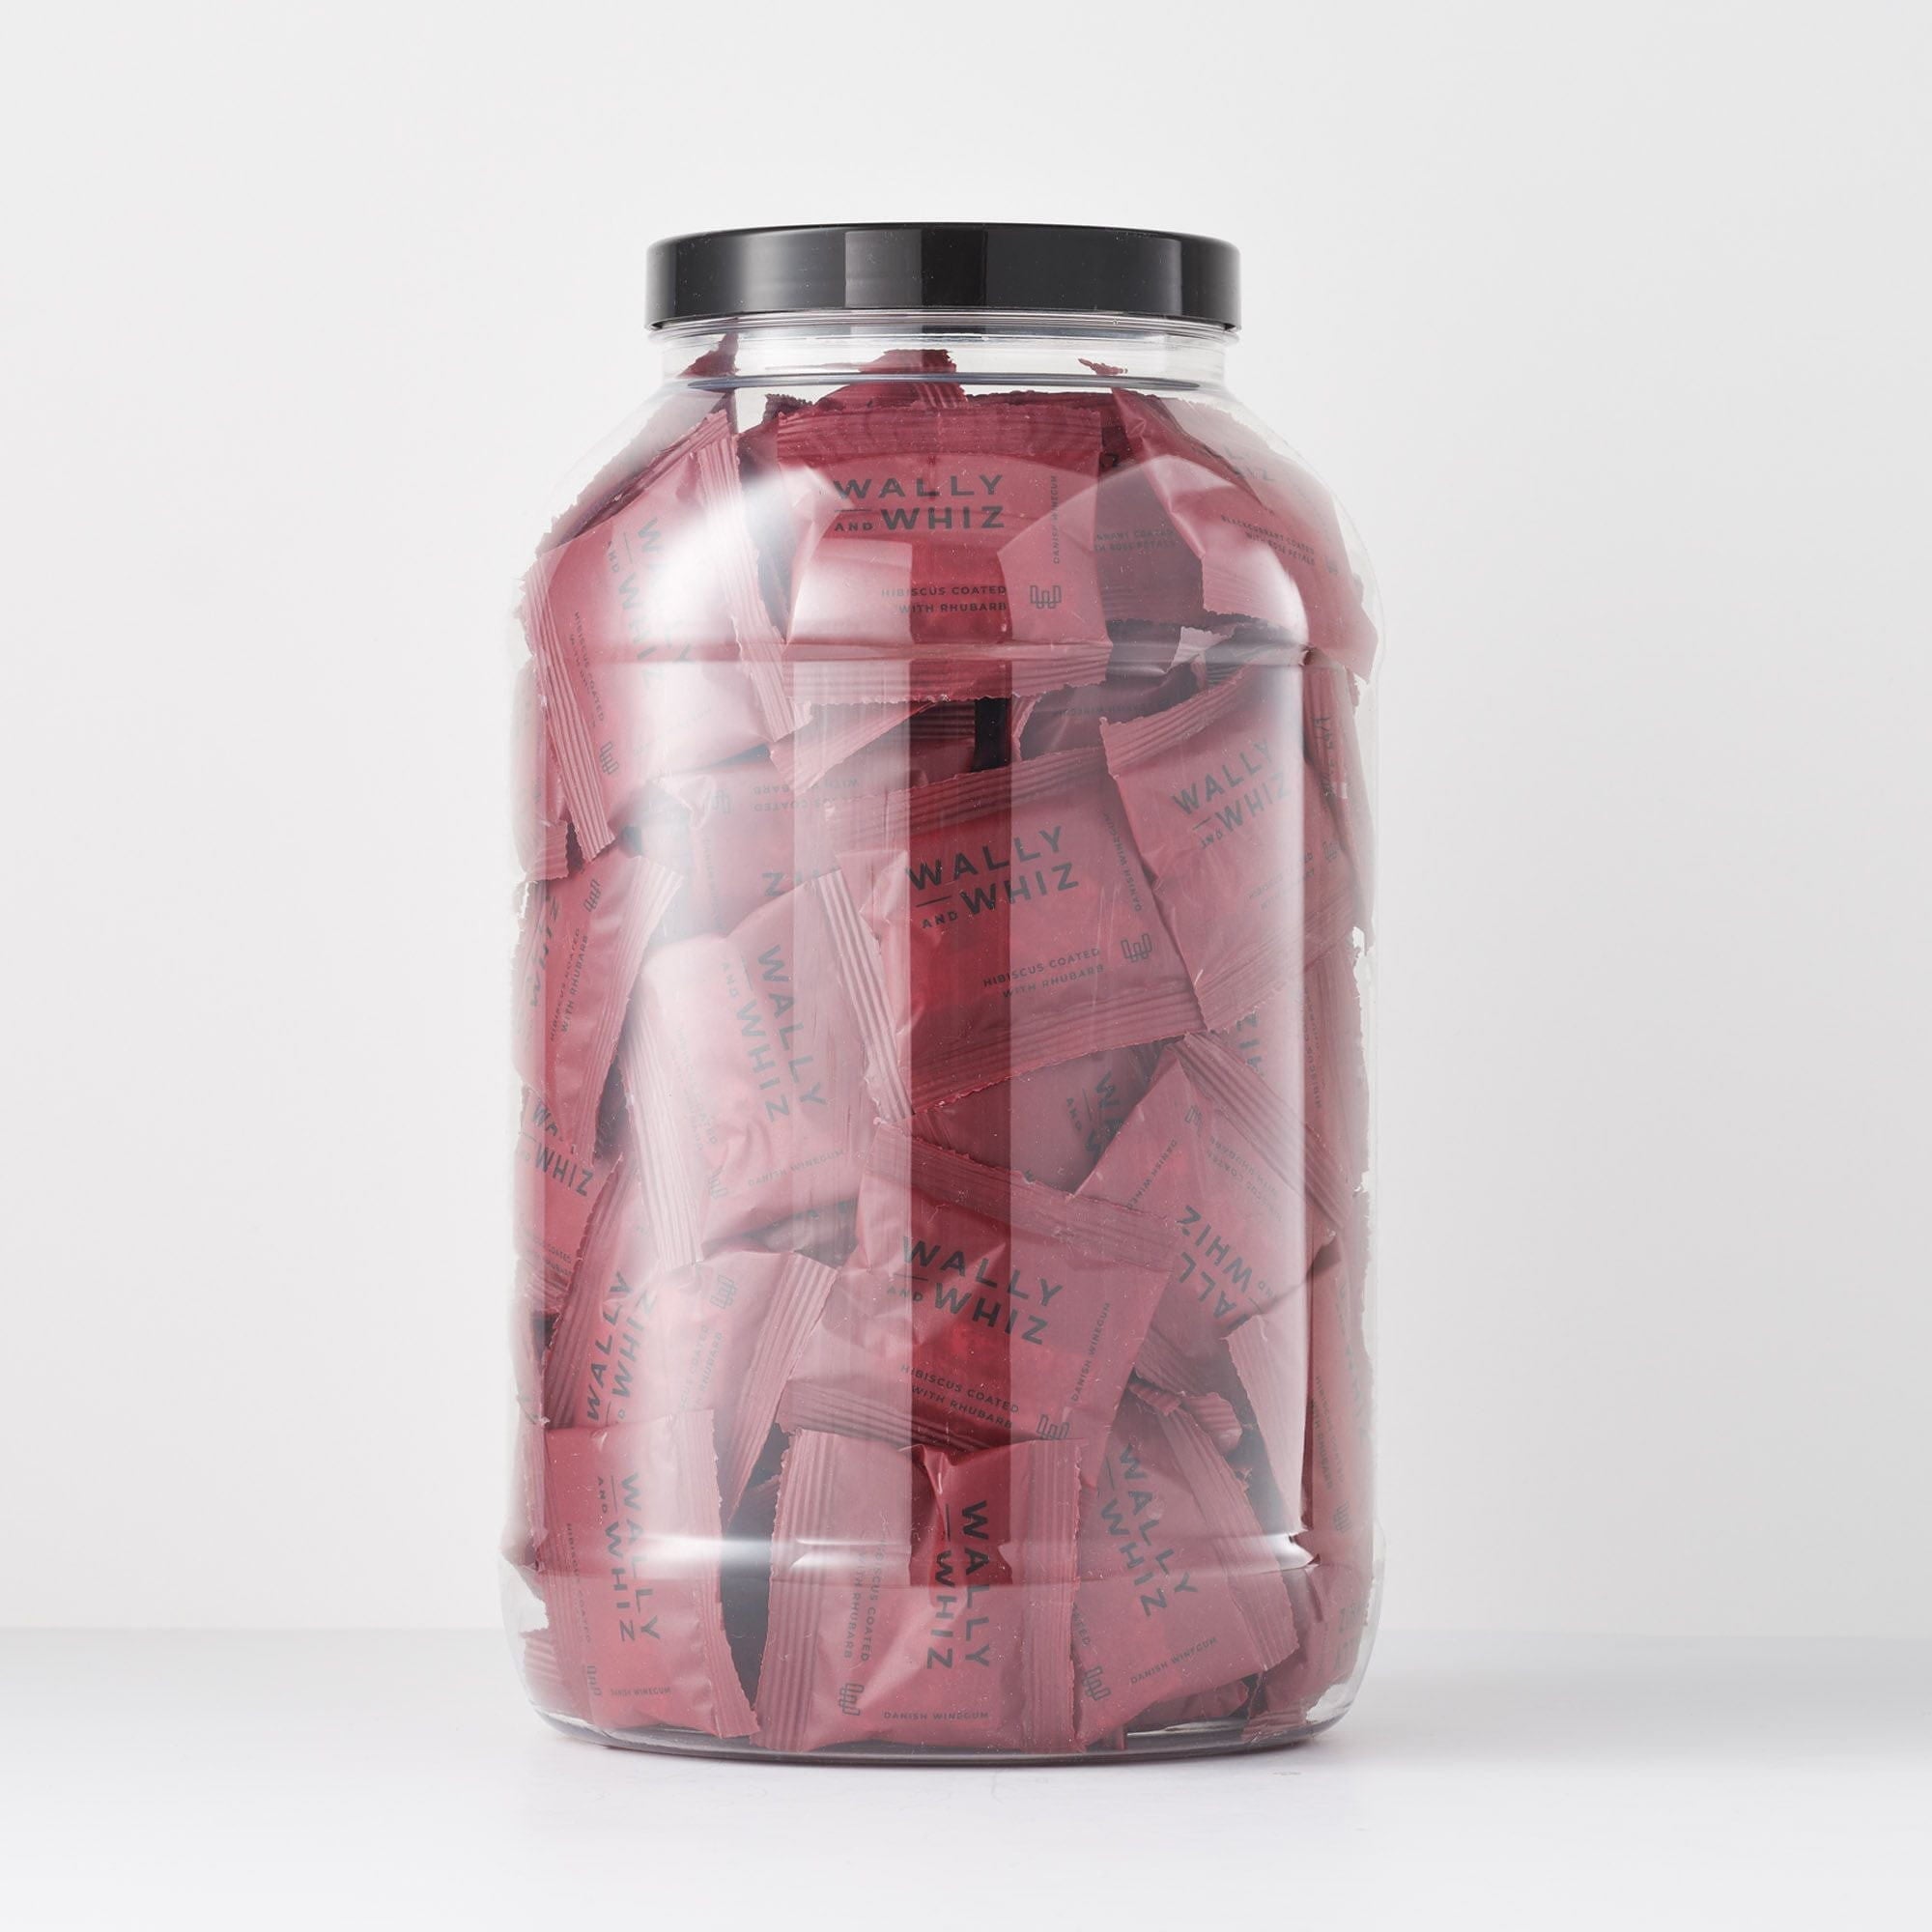 Wally y Whiz Wine Gum Jar con 125 paquetes de flujo, hibisco con ruibarbo